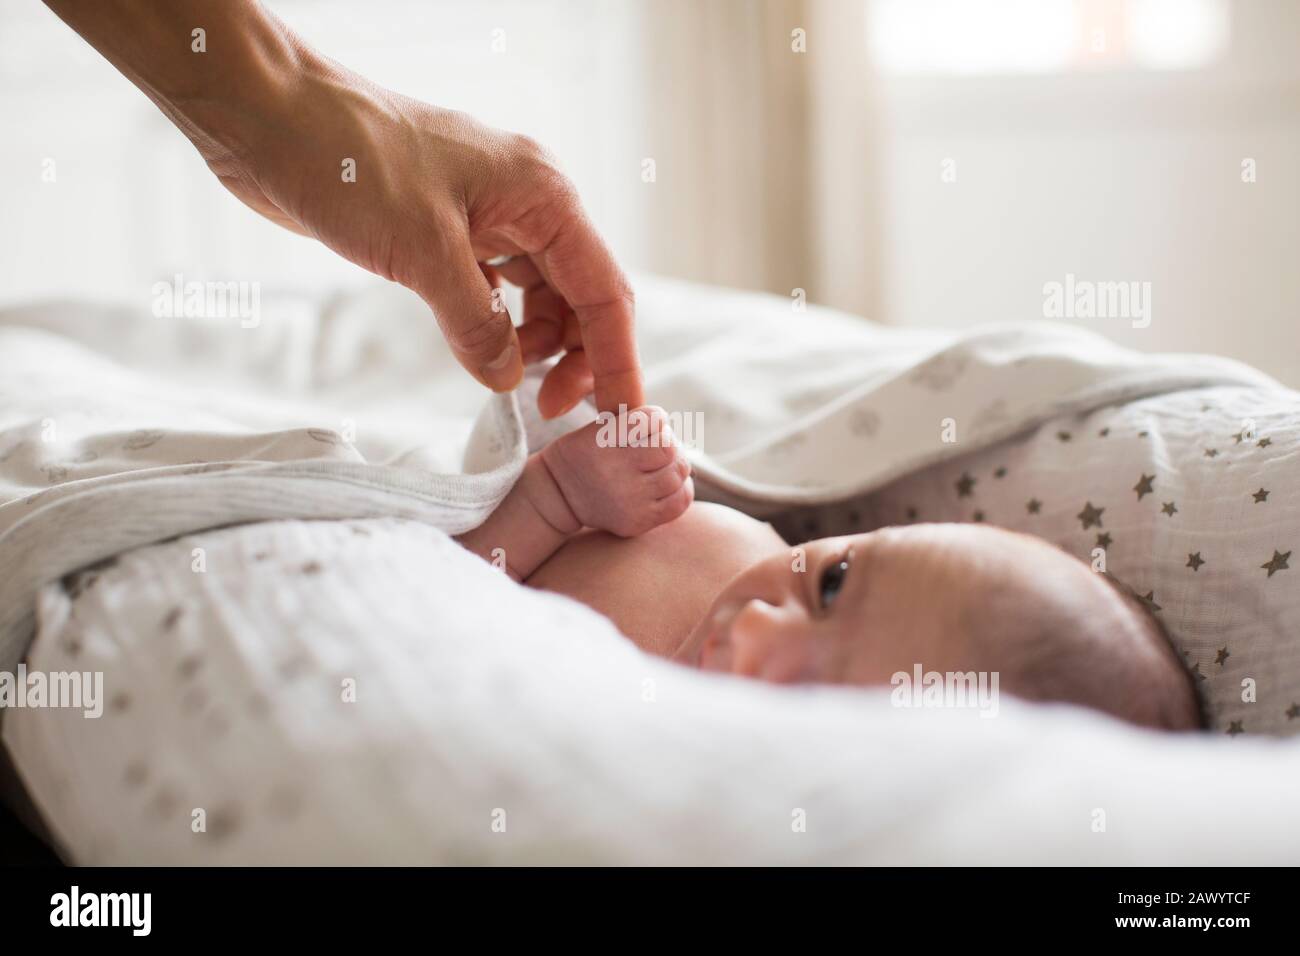 Mutter hält Hände mit neugeborenem Baby, der in der Fagotte liegt Stockfoto